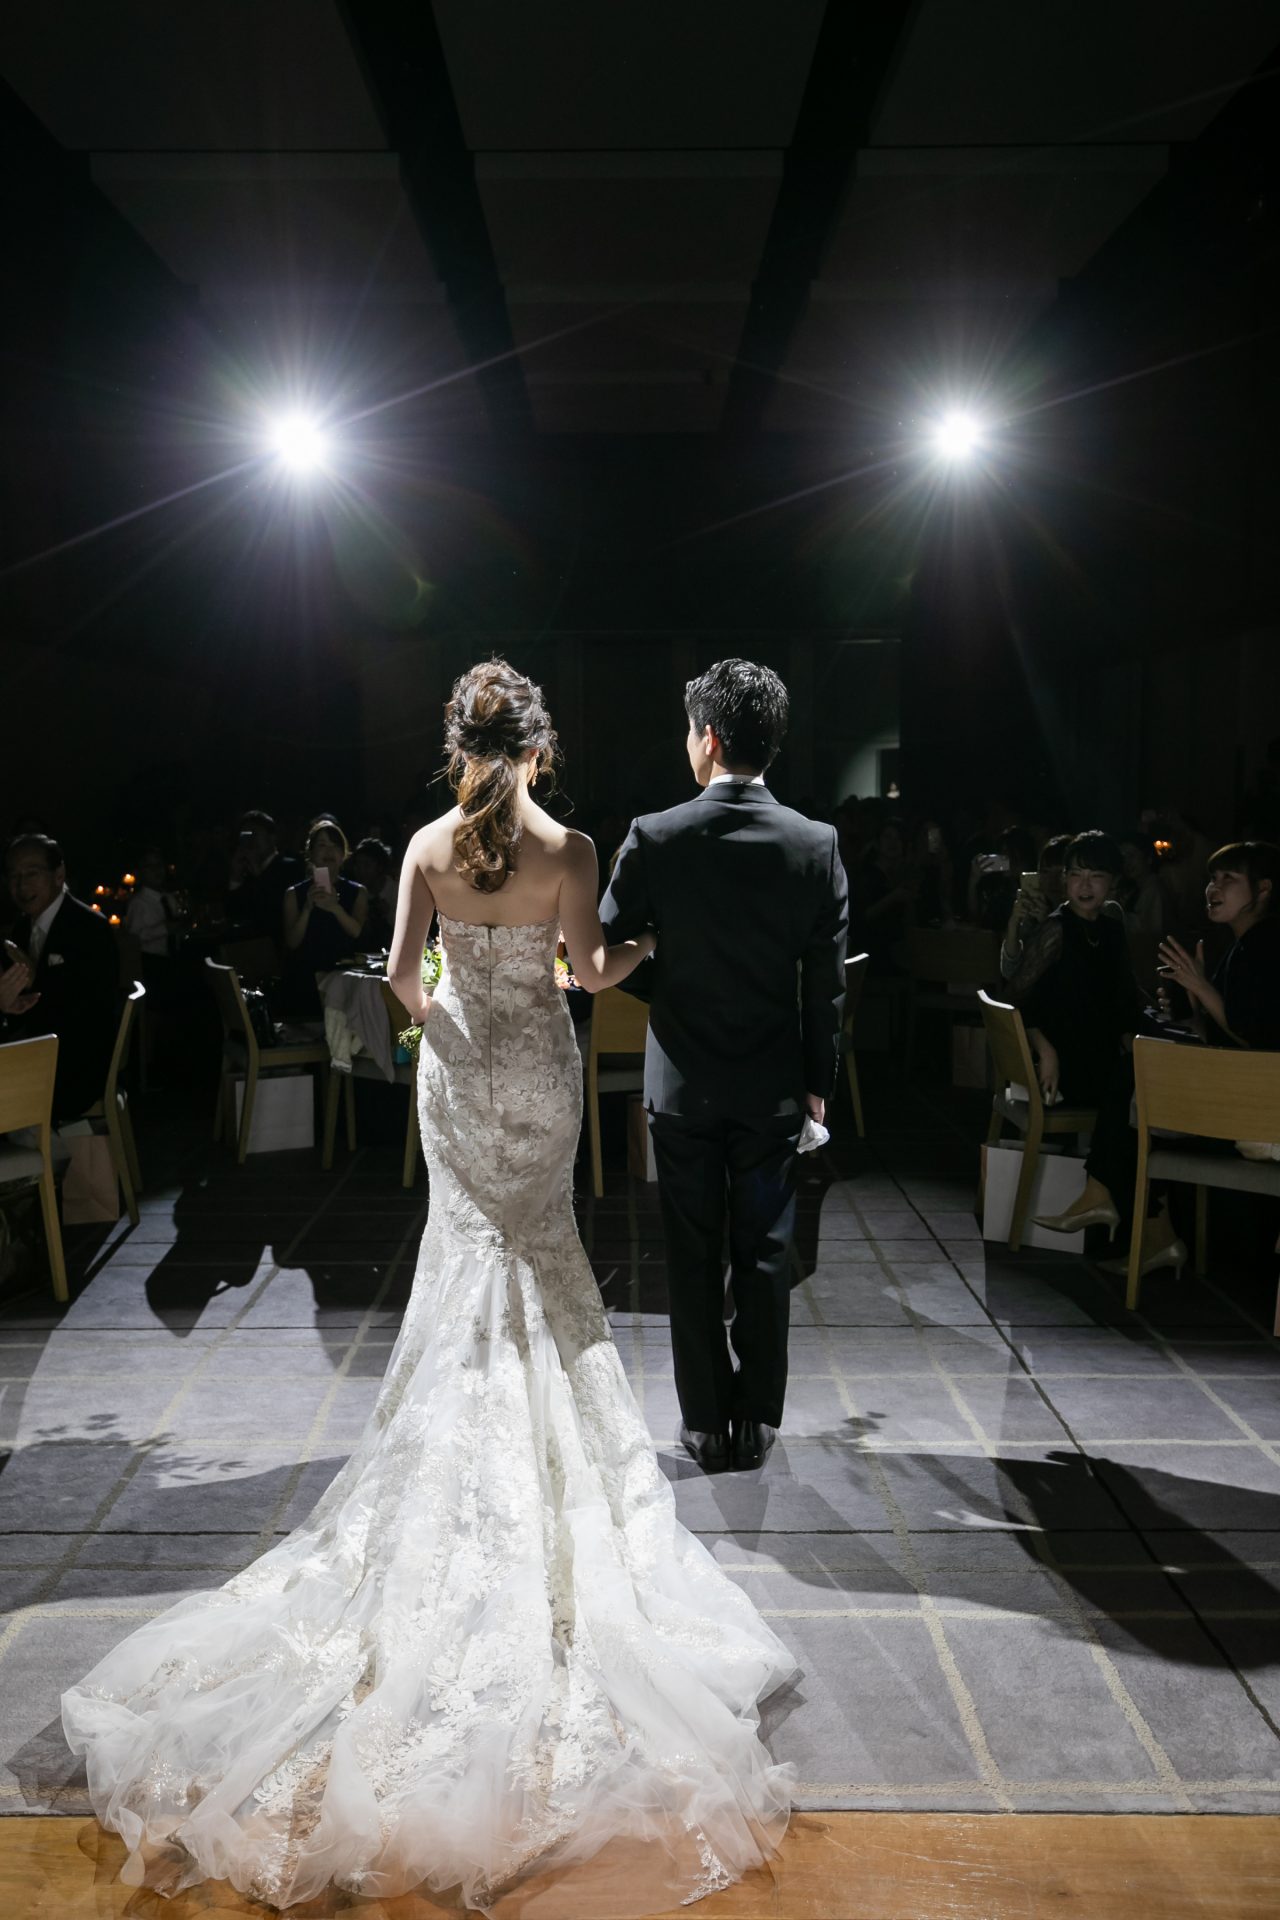 お洒落な花嫁様に人気の会場、アンダーズ東京での結婚式でお色直しの１着として選ばれたのは、海外のトップブランド モニーク・ルイリエならではの繊細な金刺繍が美しいマーメイドラインのウェディングドレス